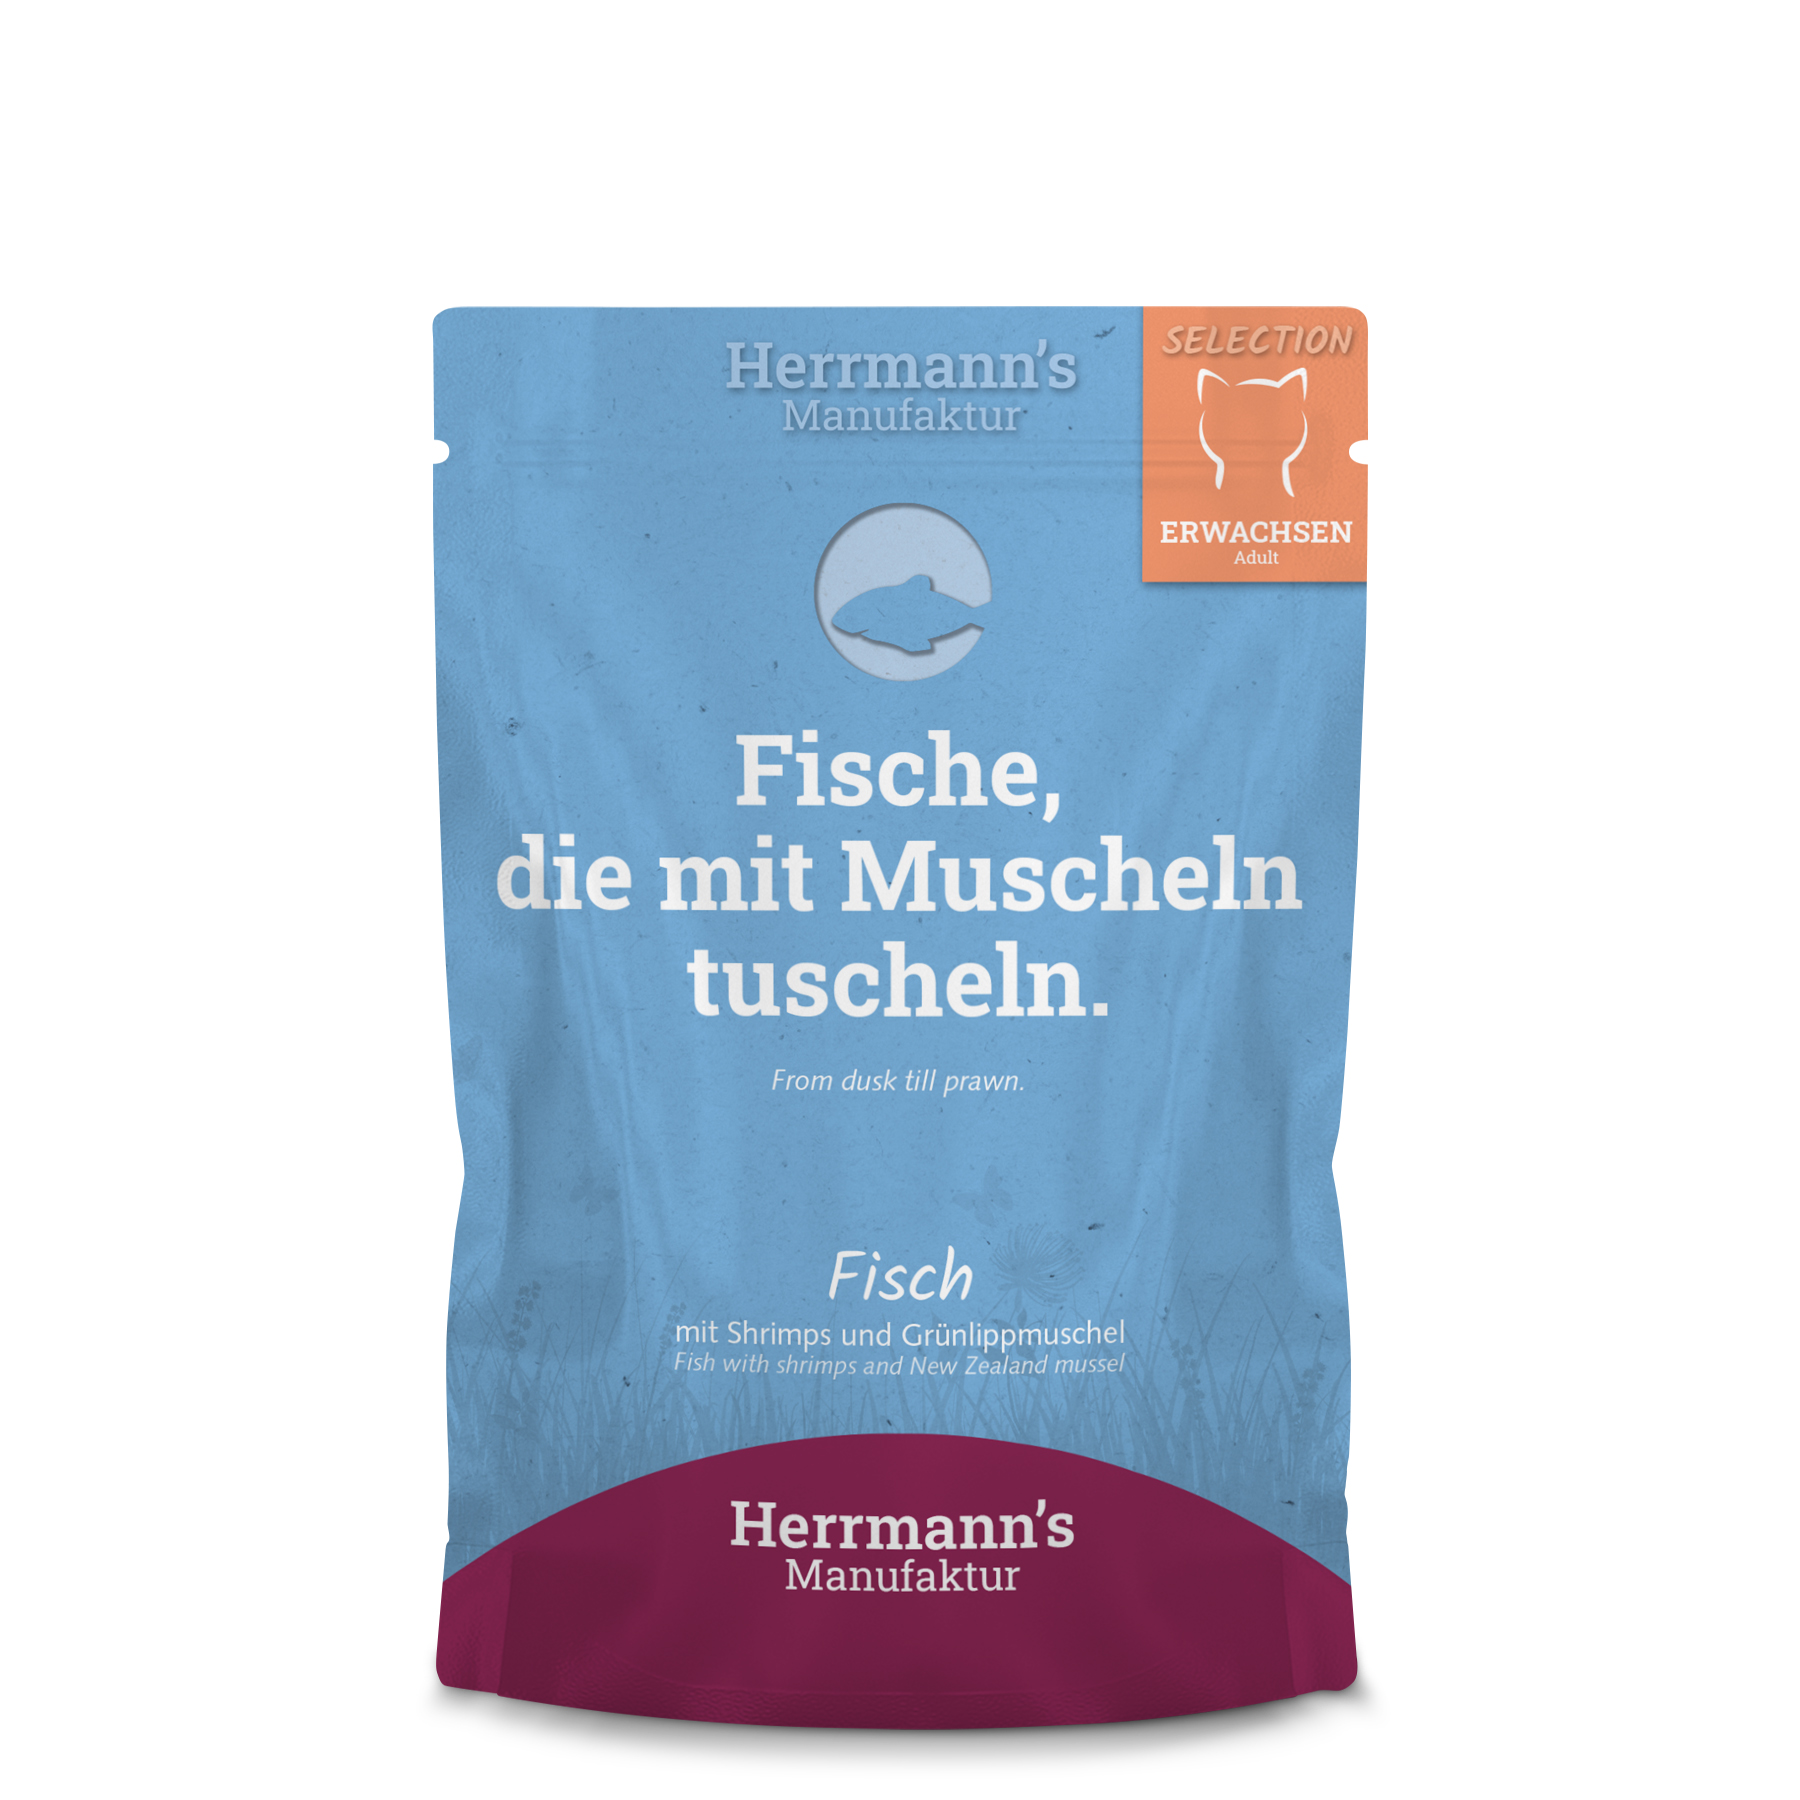 Fisch NICHT BIO, Shrimps, Grünlippmuschel 100g Gluten-, getreidefrei Herrmann's - Bild 1